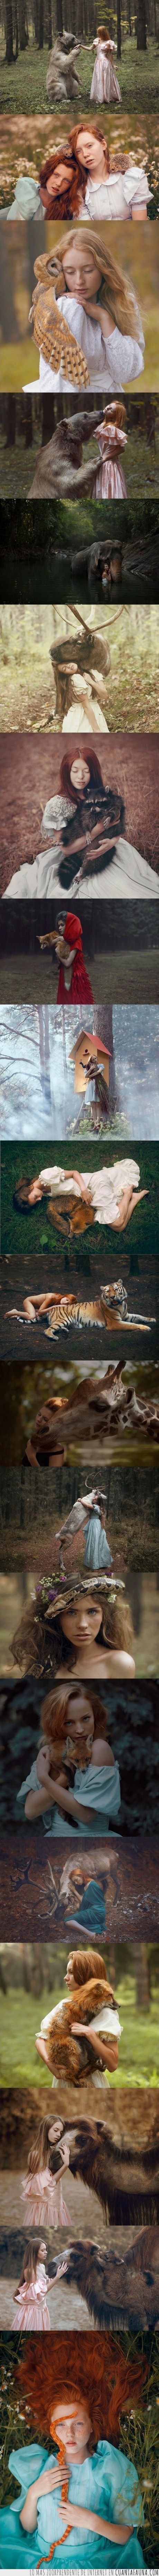 15910 - Preciosas fotografías de chicas con animales salvajes - Mucho mejor con un toque animal